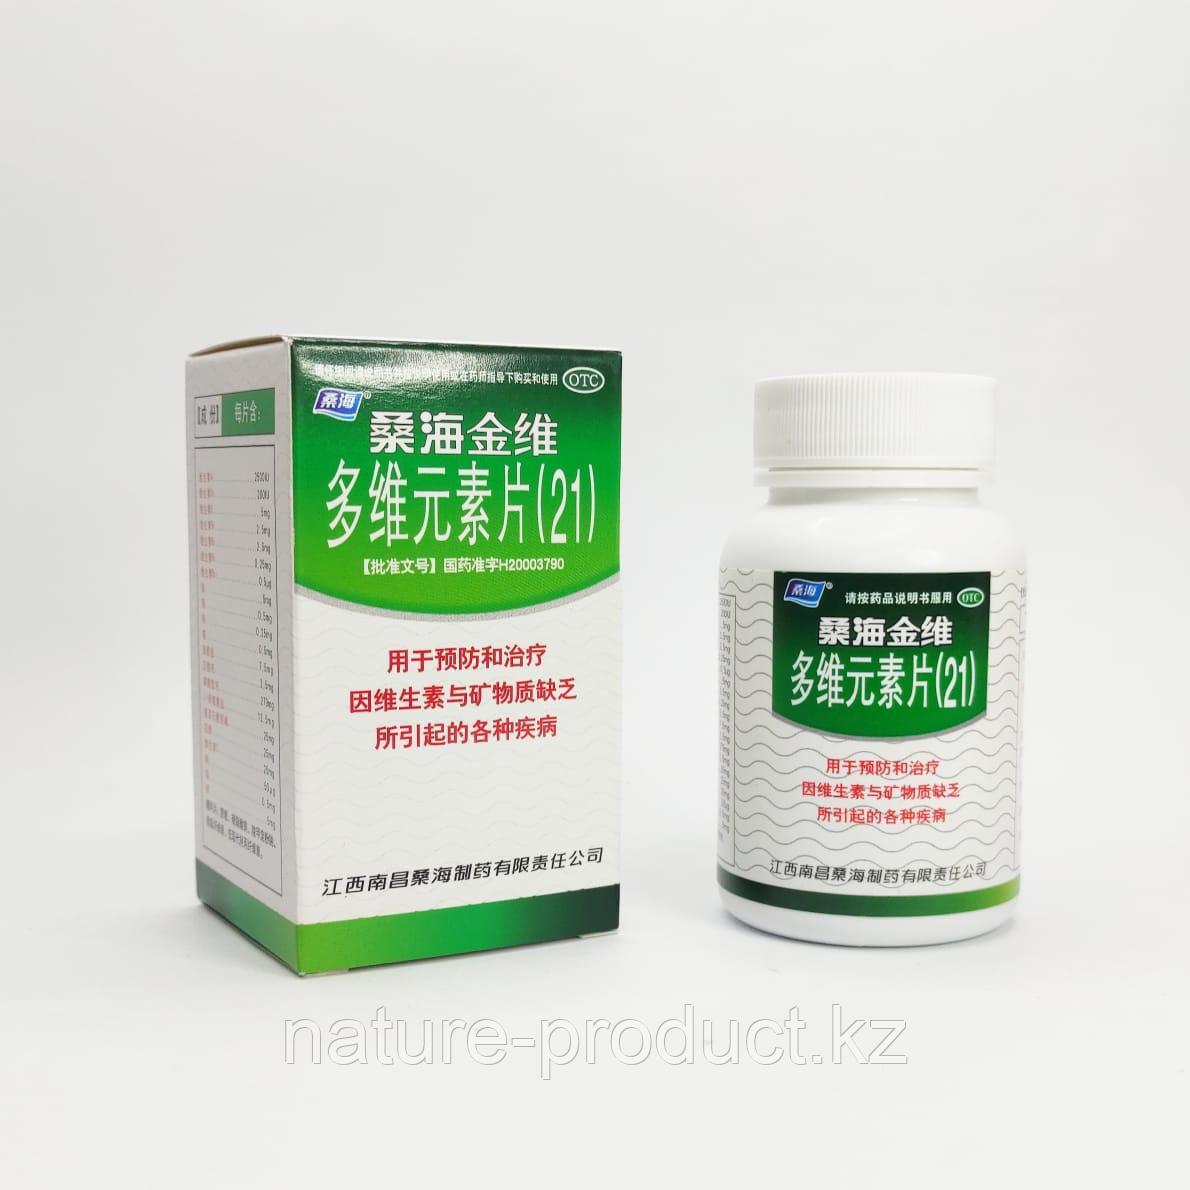 Мультивитамины и мультиминералы в таблетках Duowei yuansu Pian (21 витамин) 60 шт.